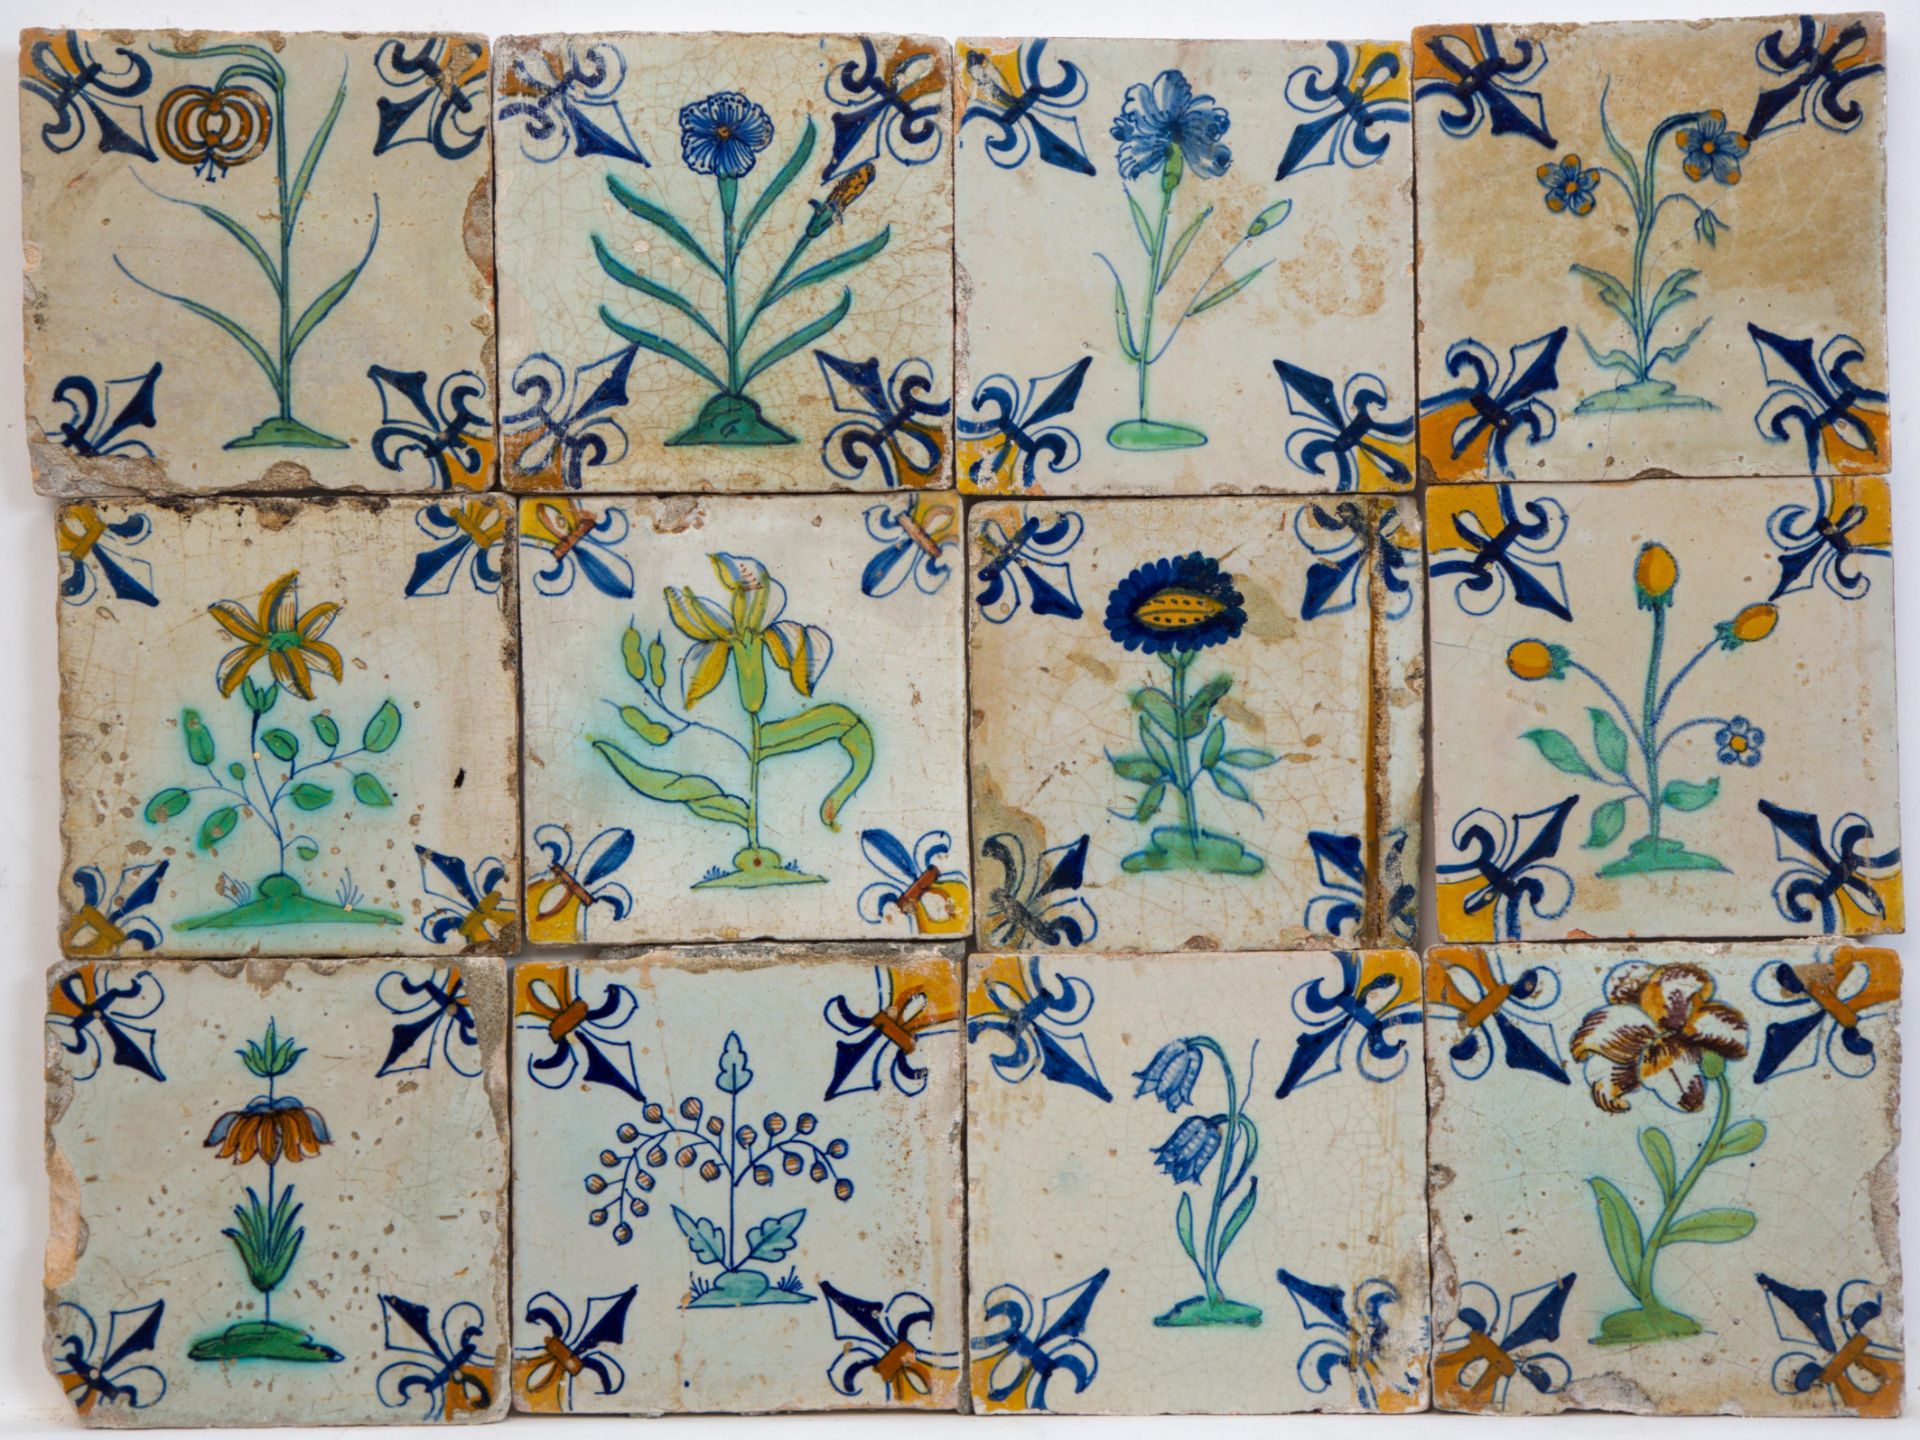 Twaalf polychroom aardewerk bloemdecortegels, eerste helft 17e eeuw;